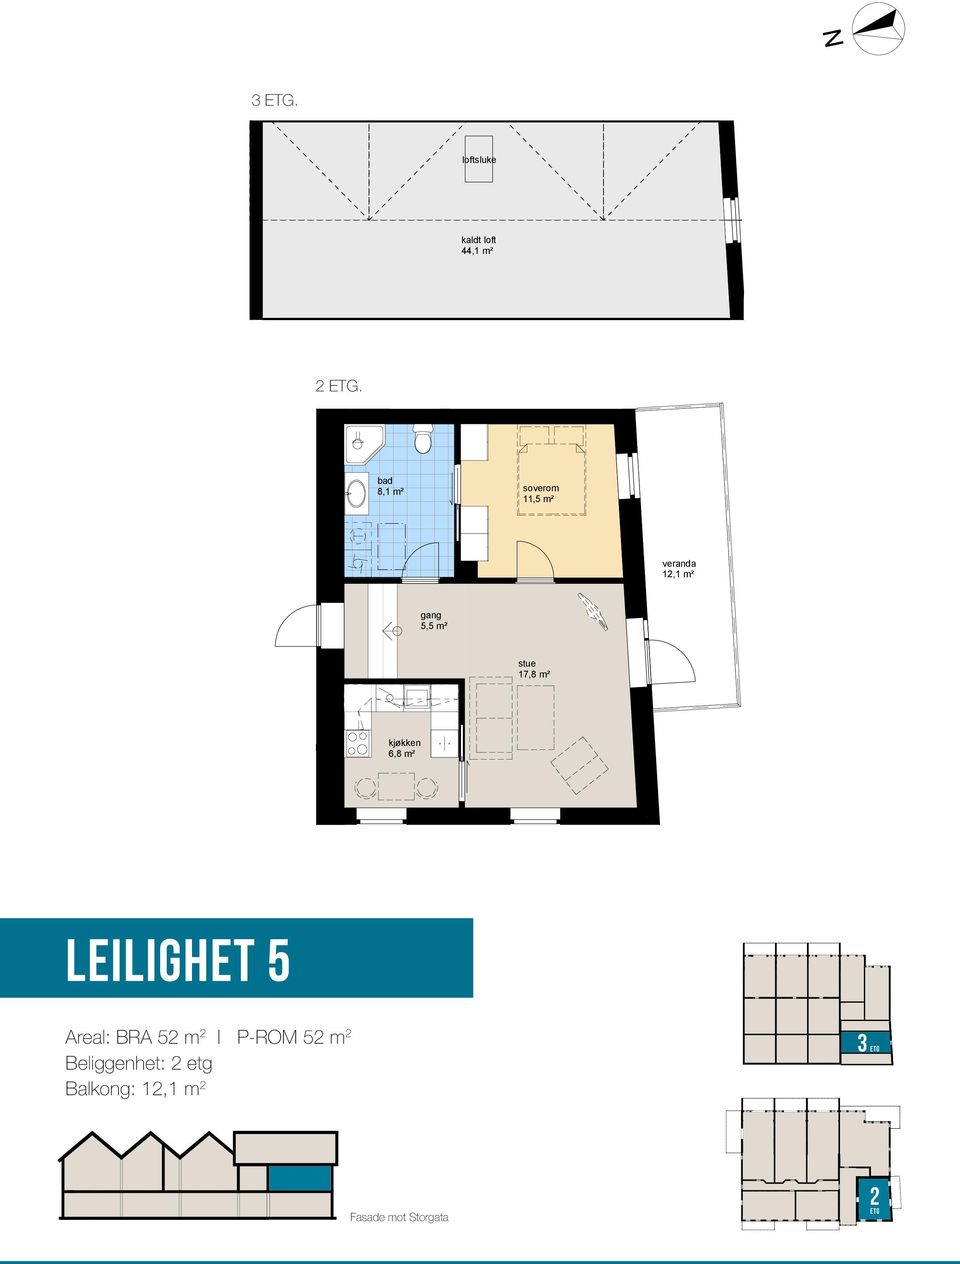 Brygge leilighet 5 Målestokk 1:100 0 1 2 3 4 kjøkken 6,8 m² plan 2.etasje plan 3.